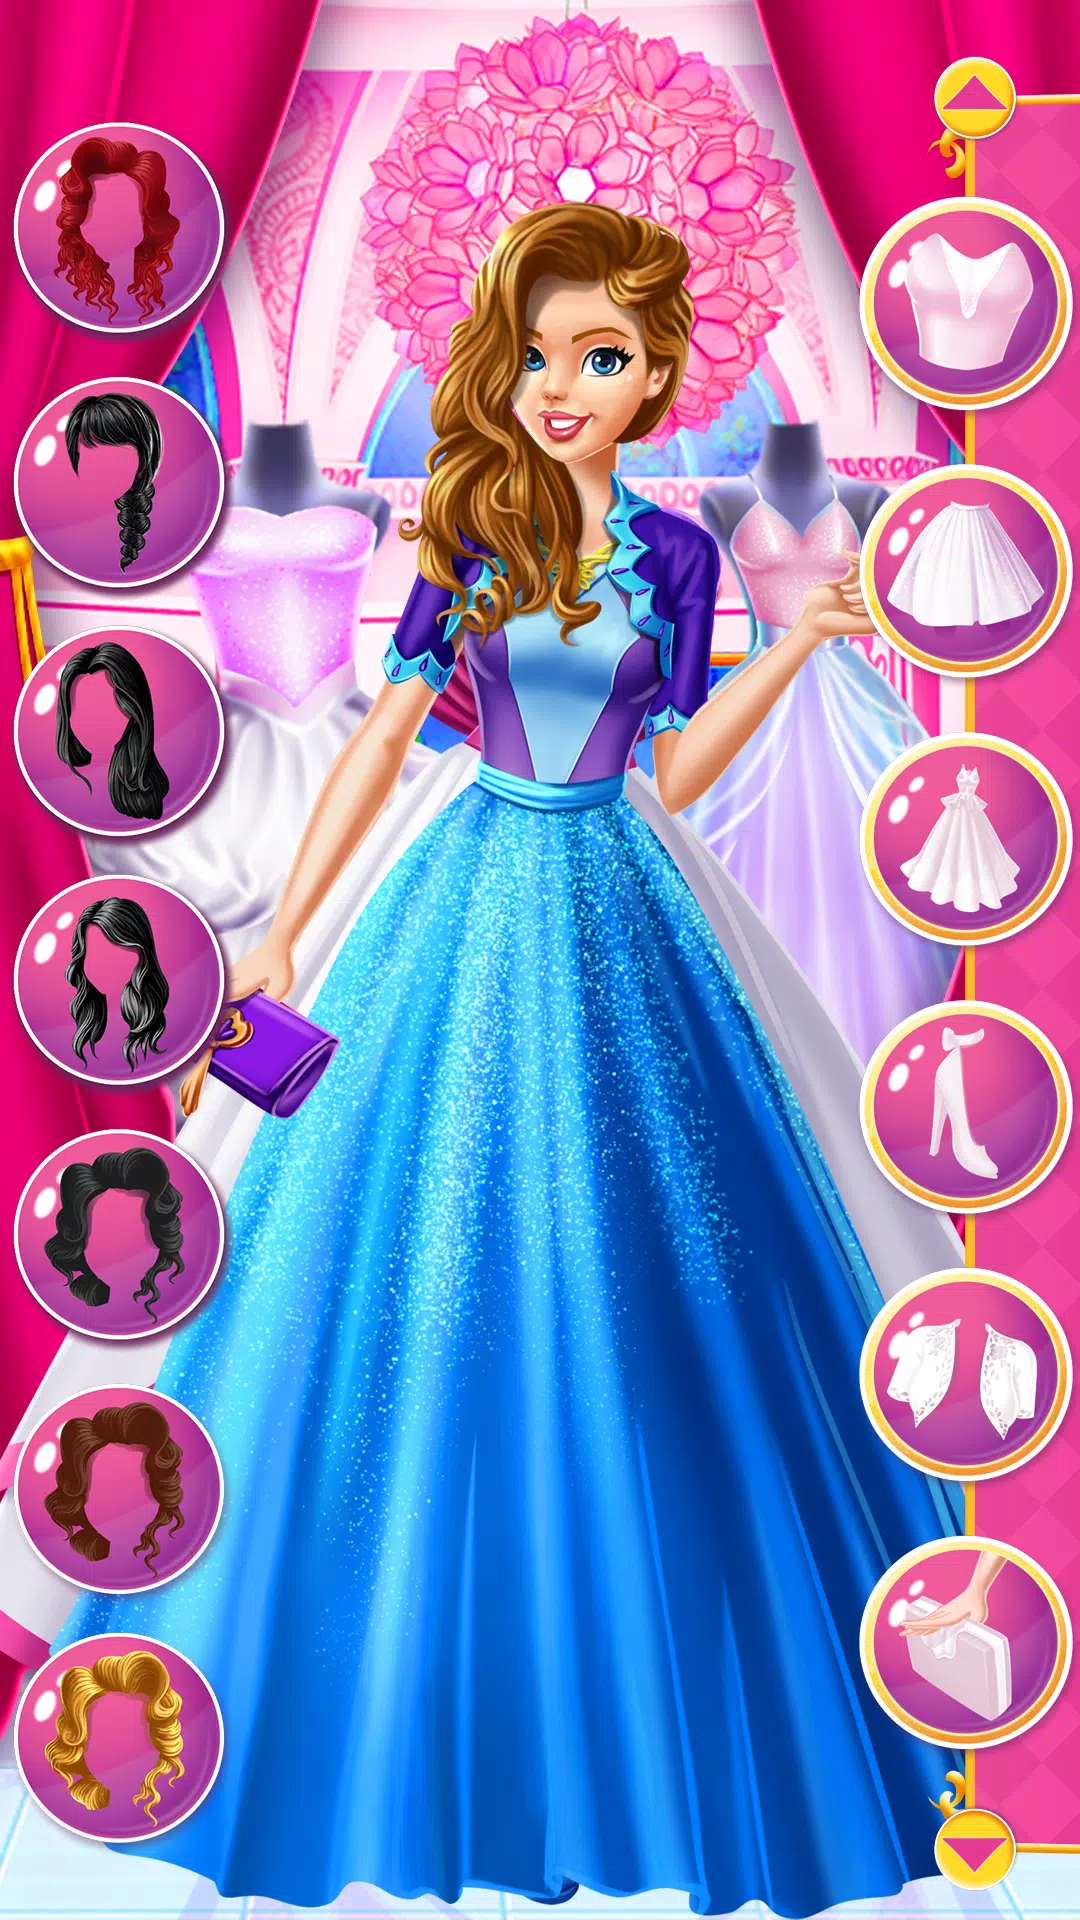 Jogos Selena no Salão de Beleza - Princesa dos Jogos